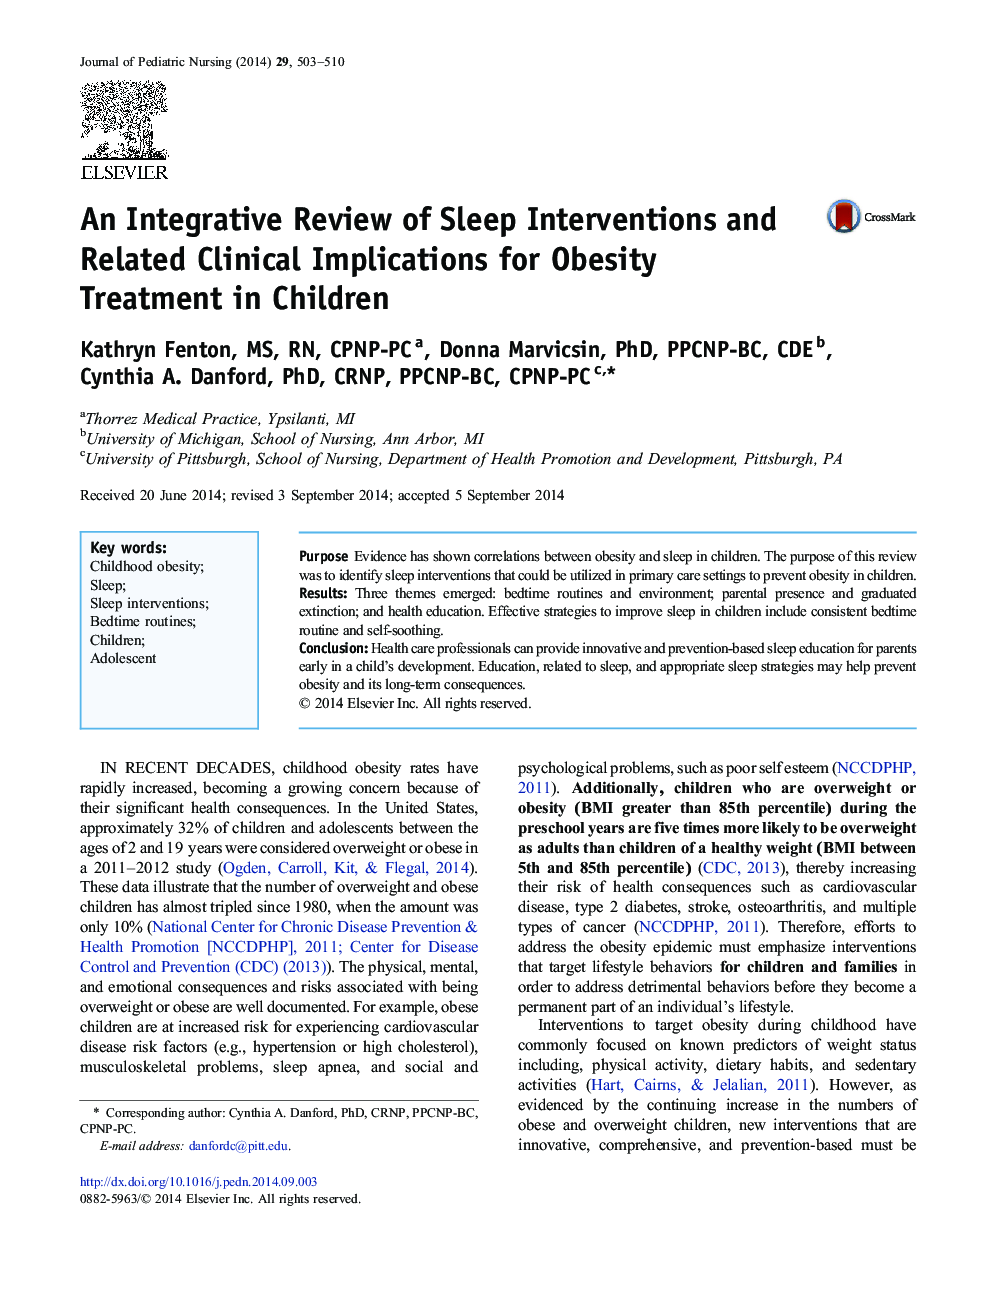 بررسی یکپارچه ای از مداخلات خواب و پیامدهای بالینی مرتبط با آن برای درمان چاقی در کودکان 